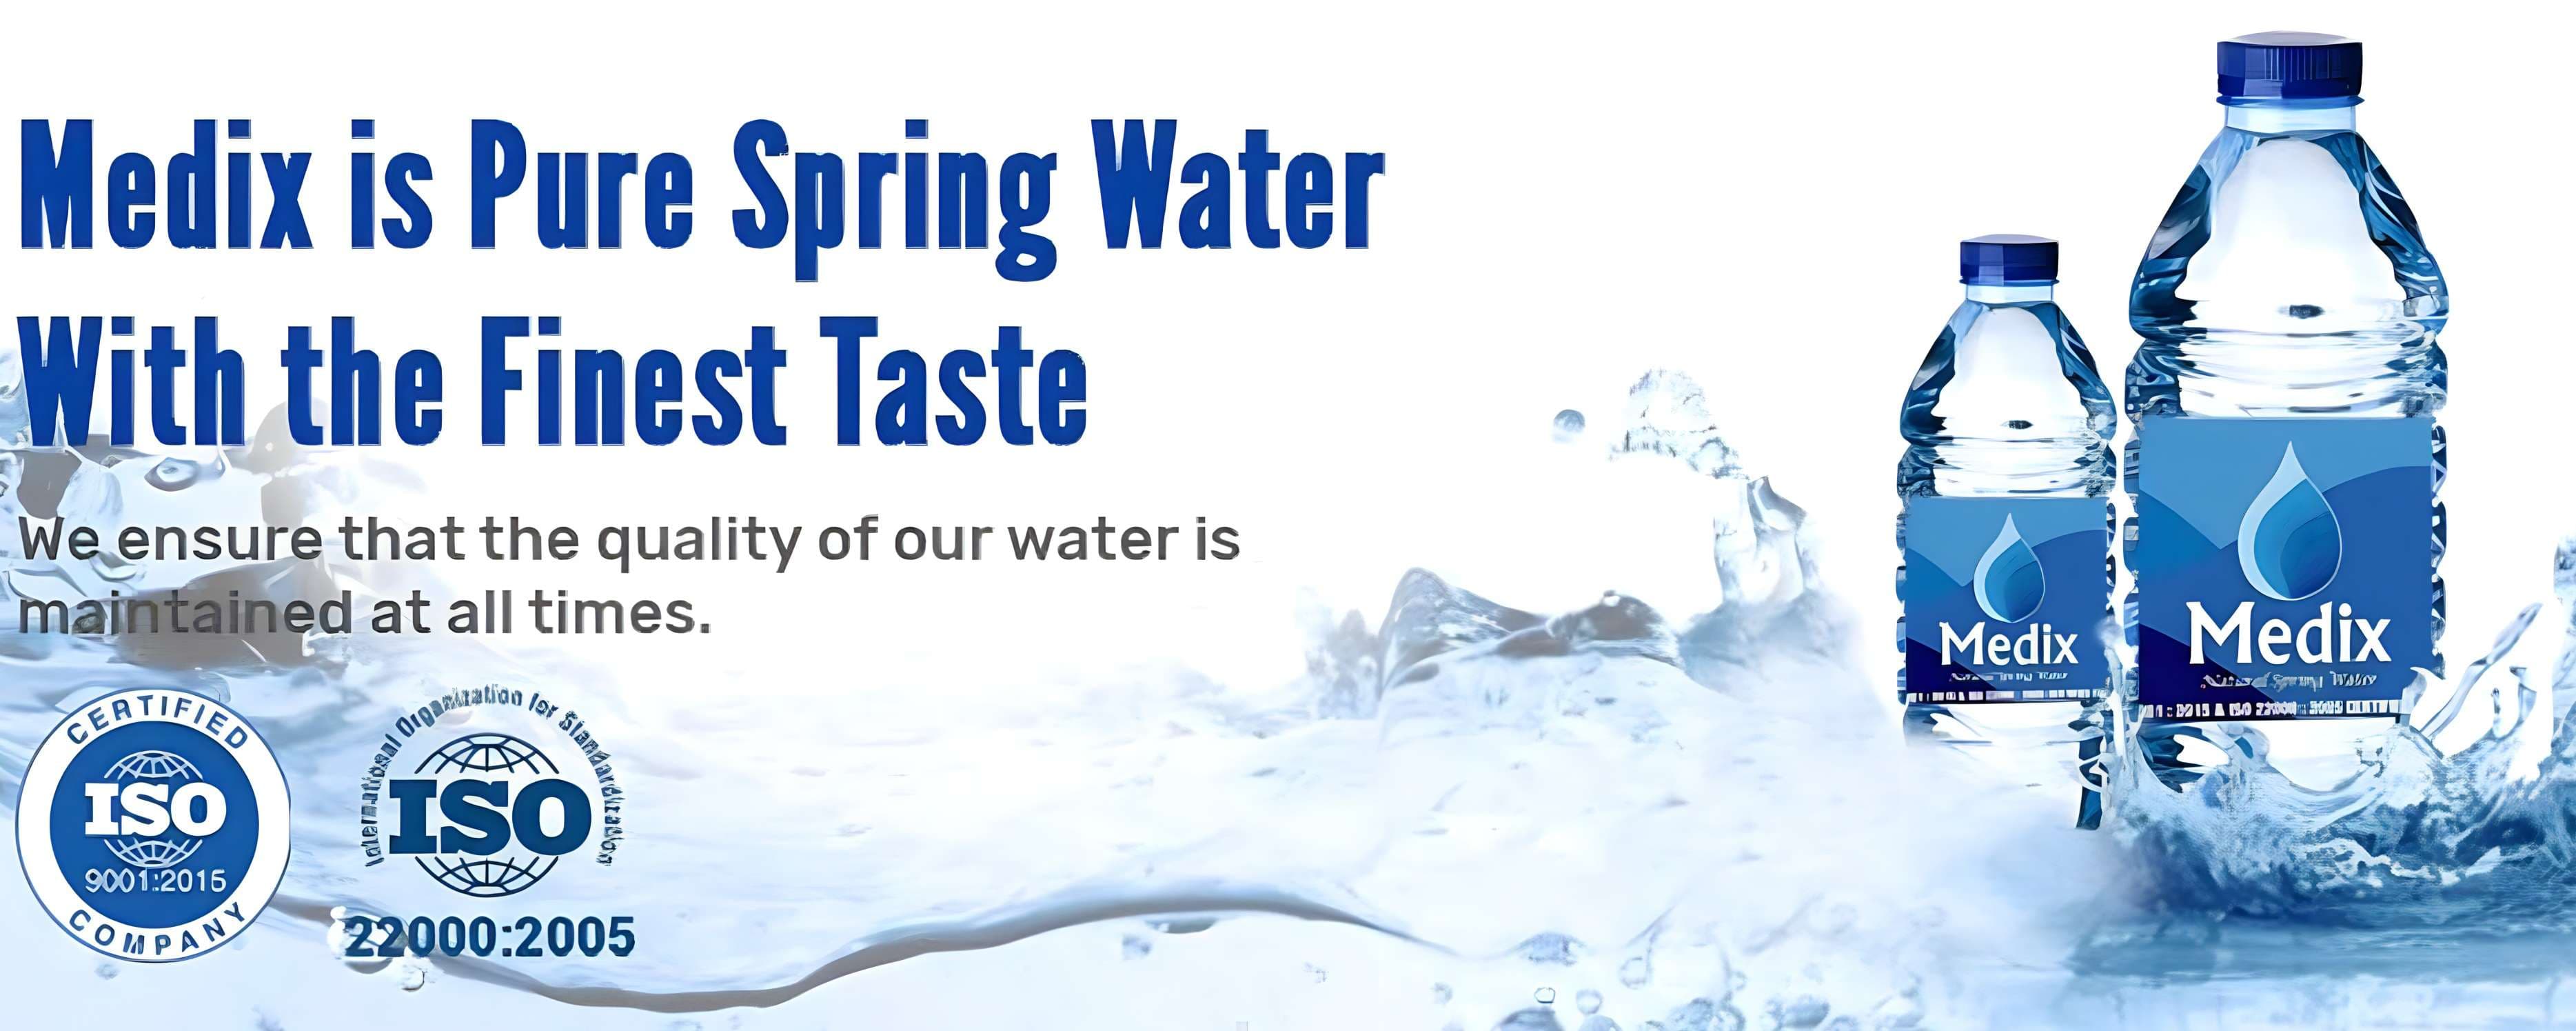 Medix - Natural Spring Water